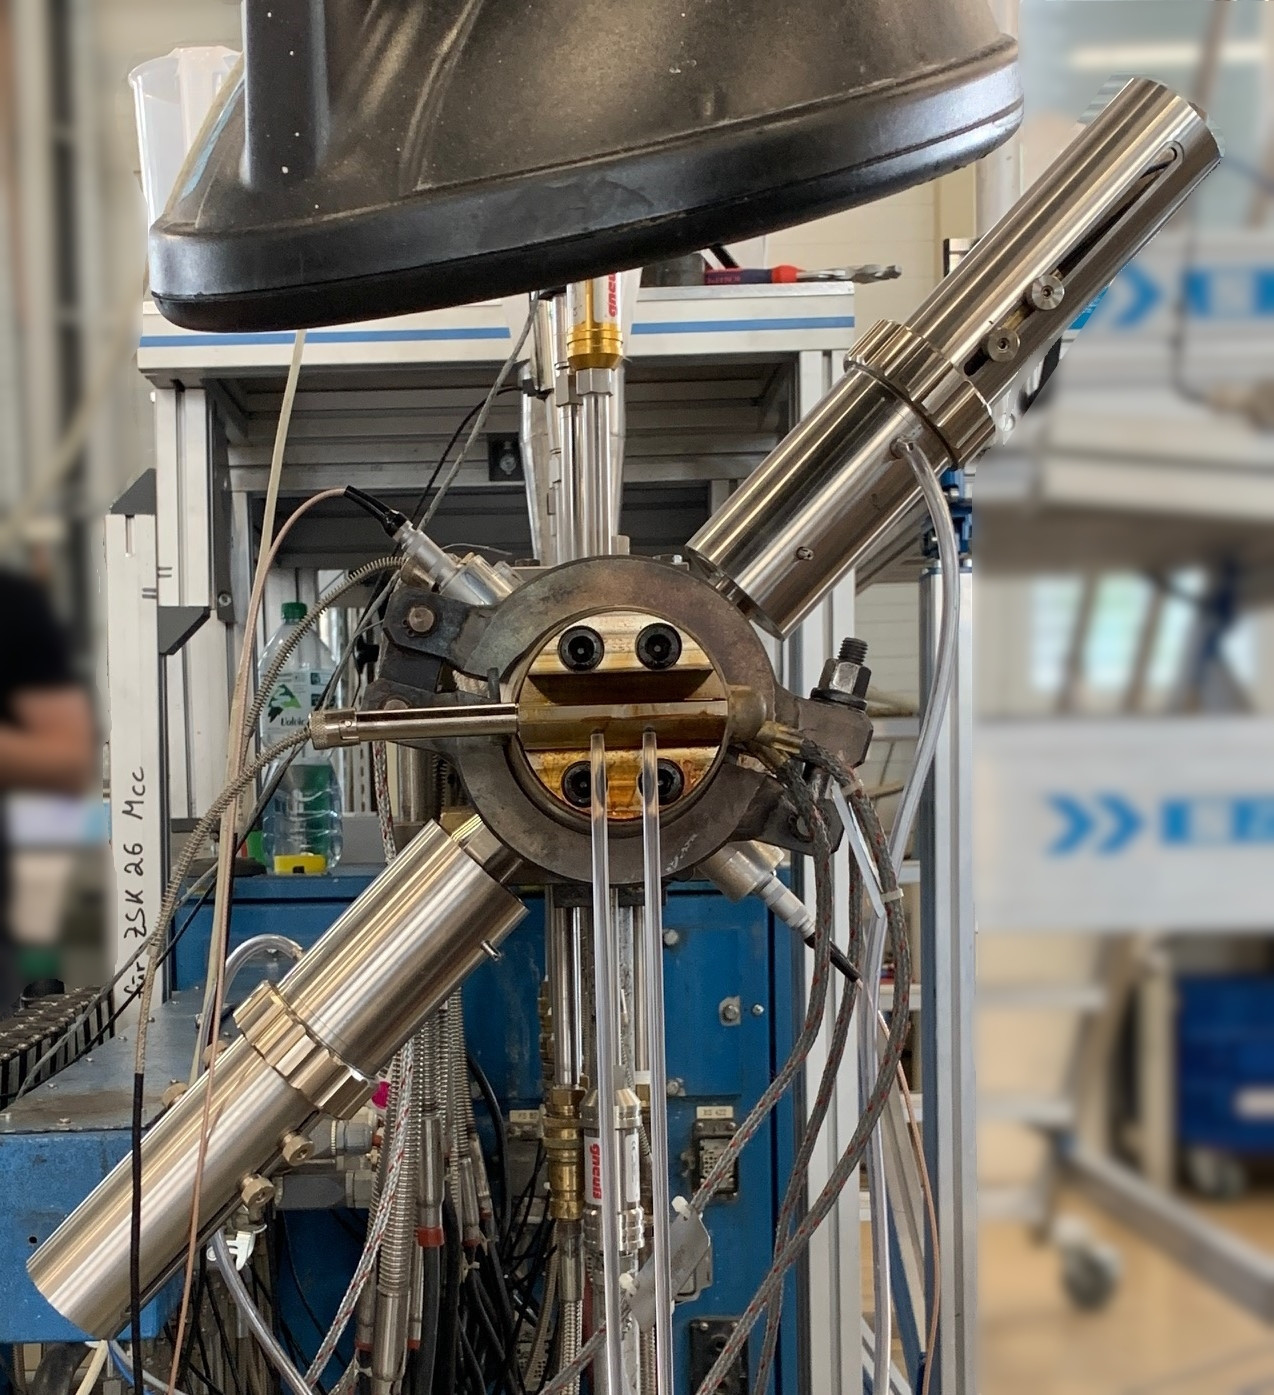 Forscher des Kunststoff-Zentrums SKZ haben einen Messadapter entwickelt, mit dem sich Terahertz-Sensoren an einen Extruder adaptieren lassen, um so die darin befindliche Kunststoffschmelze zu messen und Fremdkörper zu detektieren.